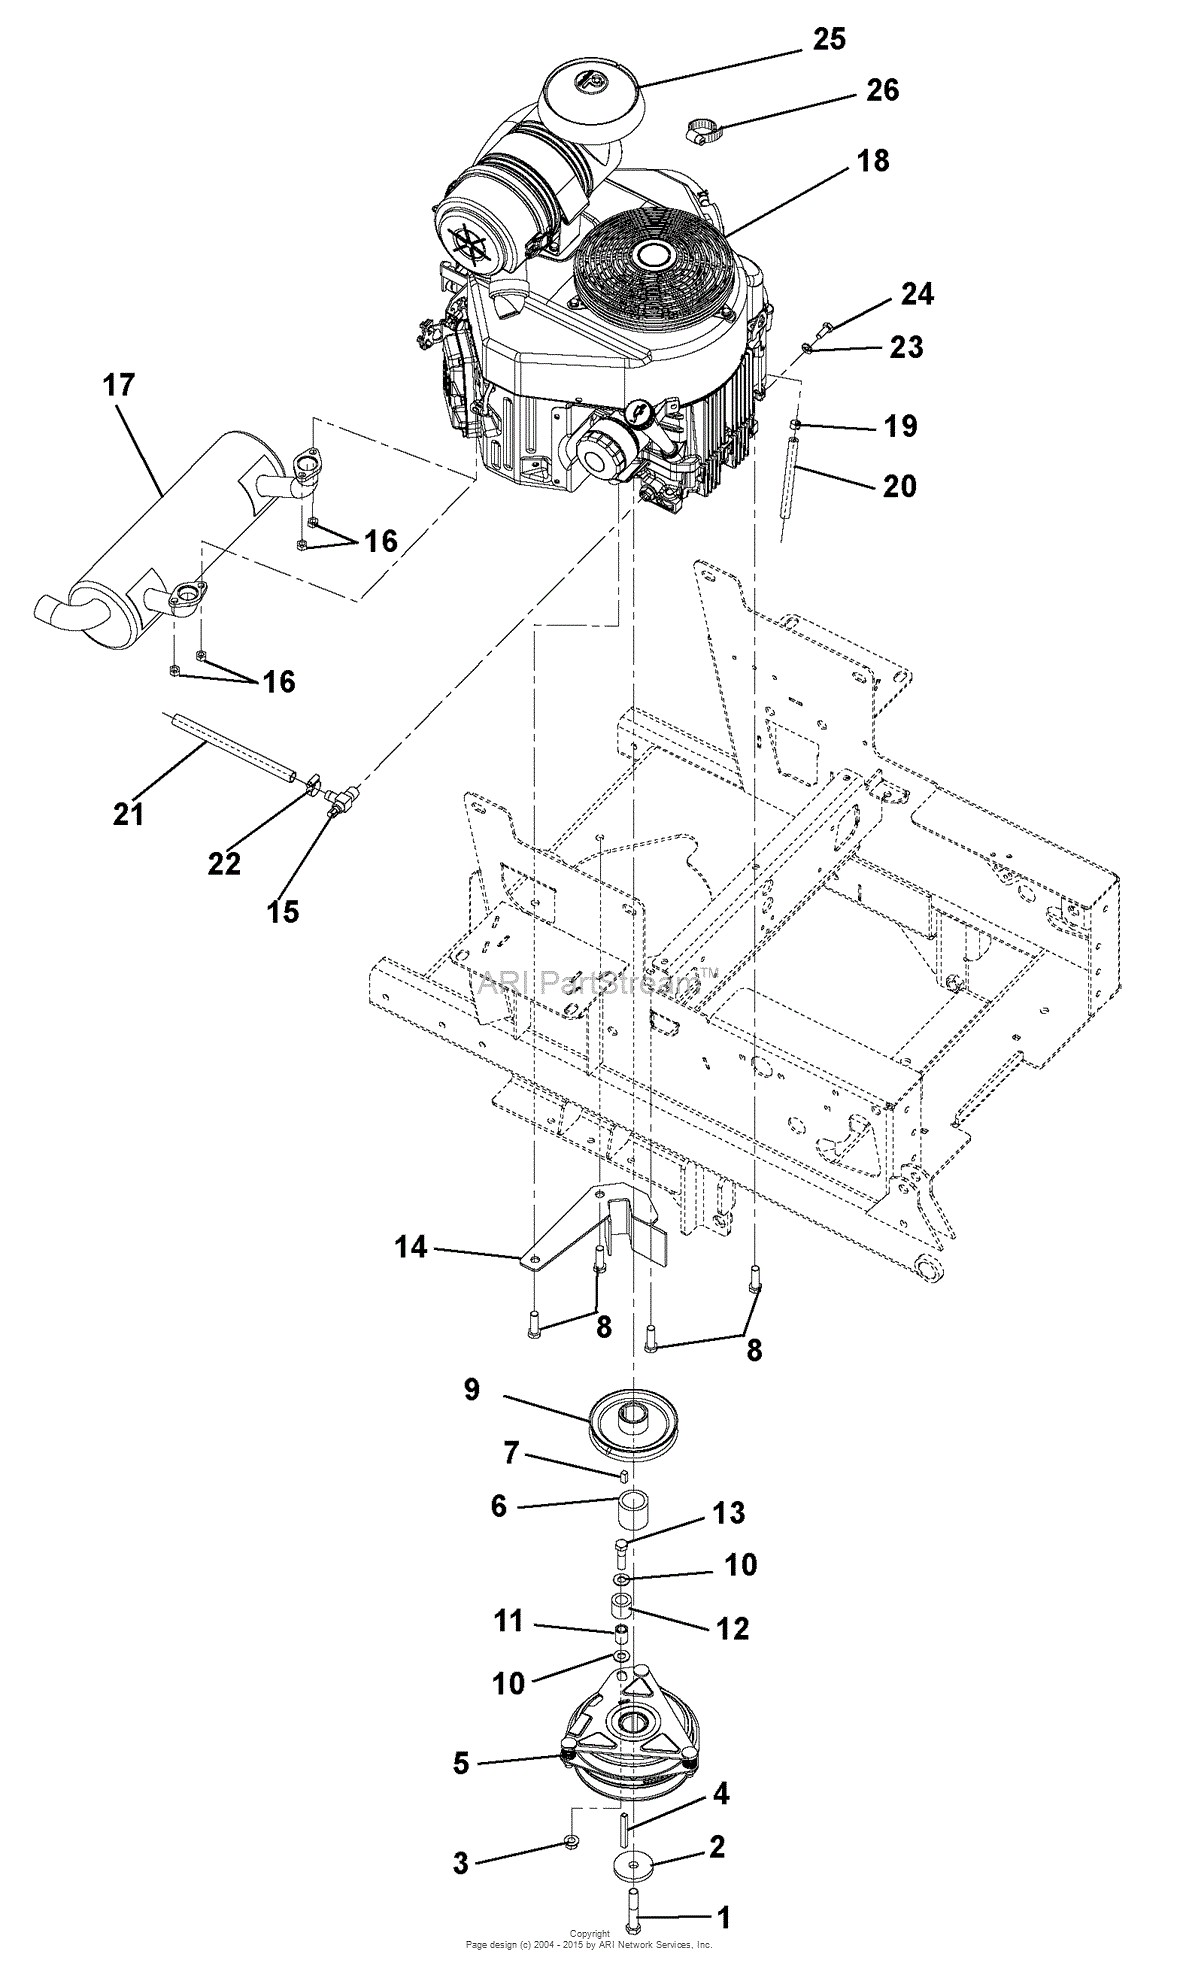 Kawasaki Lawn Mower Engine Parts Diagrams Gravely Pm152i Kawasaki 52&quot; Deck Parts Diagram